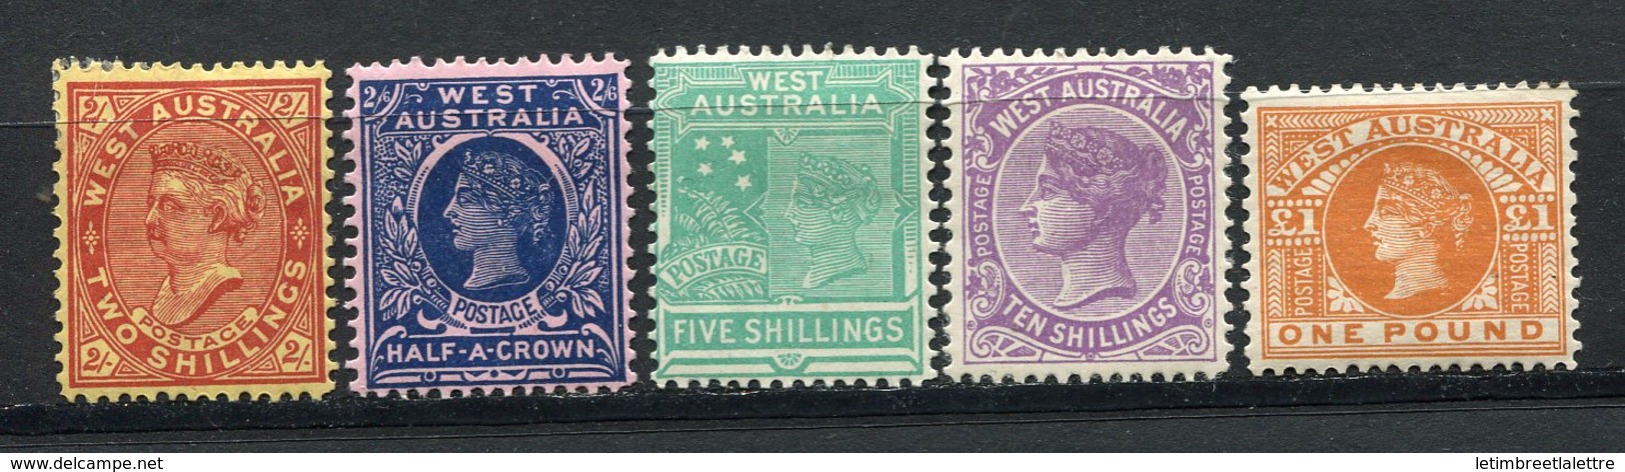 ⭐ Australie Occidentale - Dominion - N° 57 à 61 * - Neuf Avec Charnière ⭐ - Mint Stamps